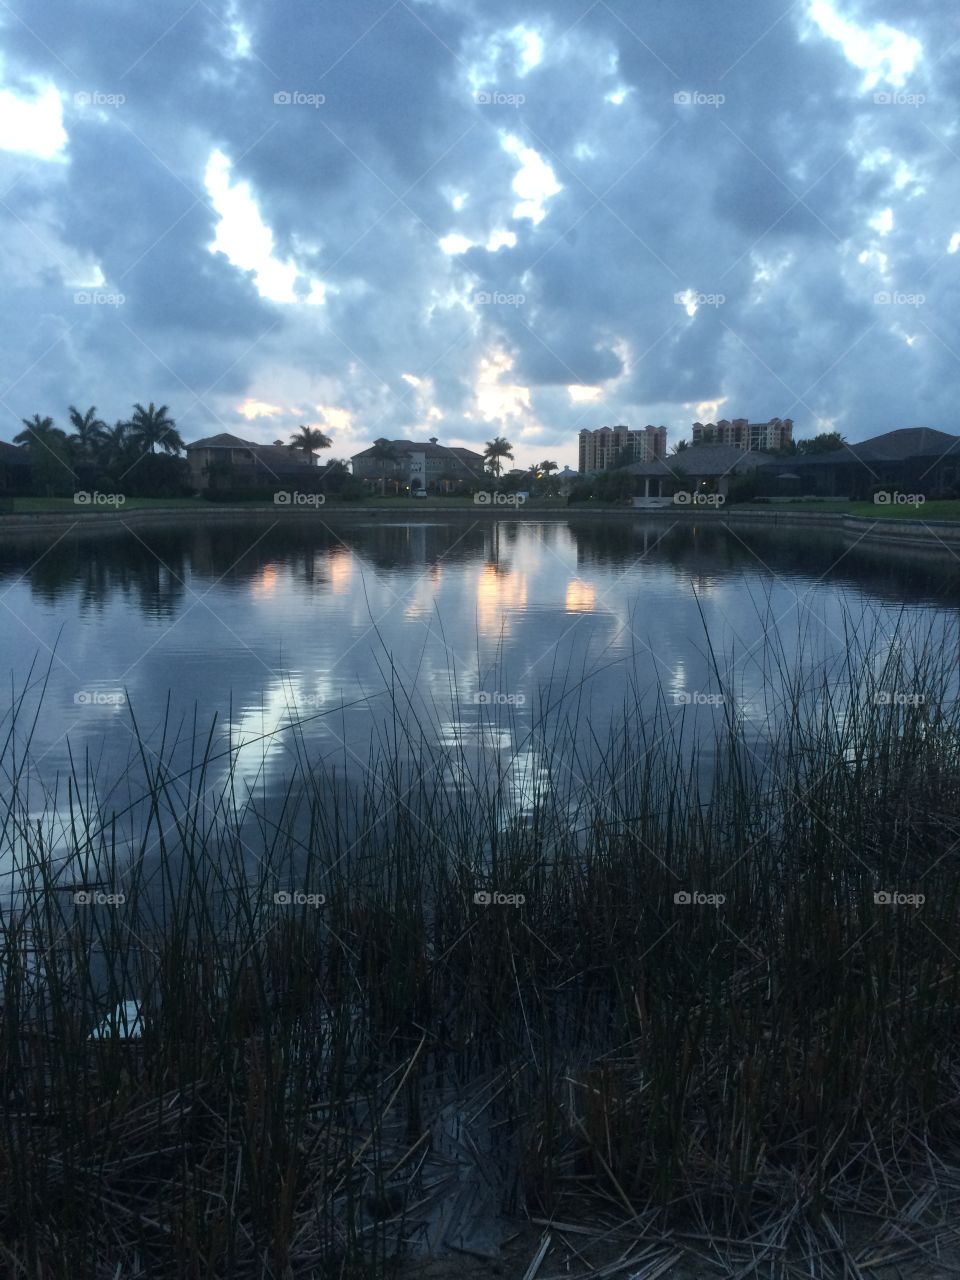 Sunset reflection onto a lake